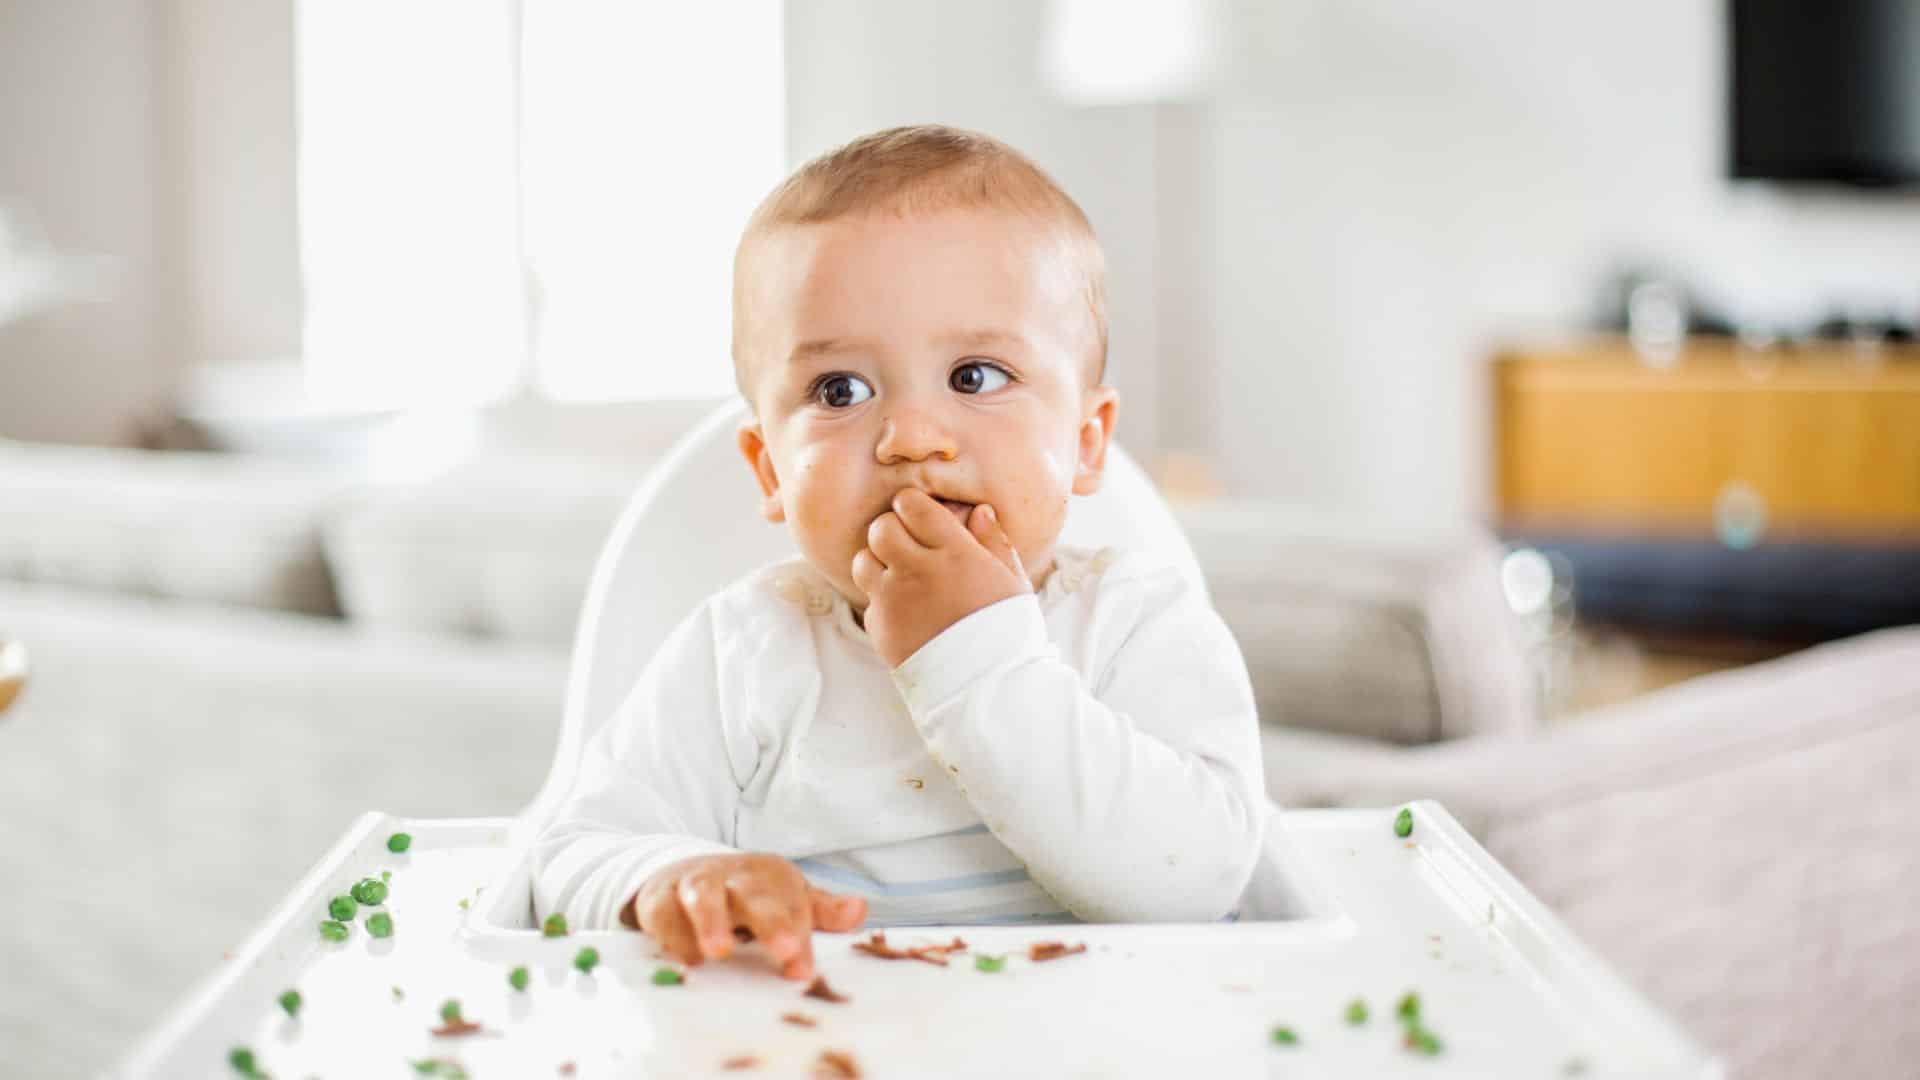 Bébé refuse de manger - bébé mange moins ou refuse de manger